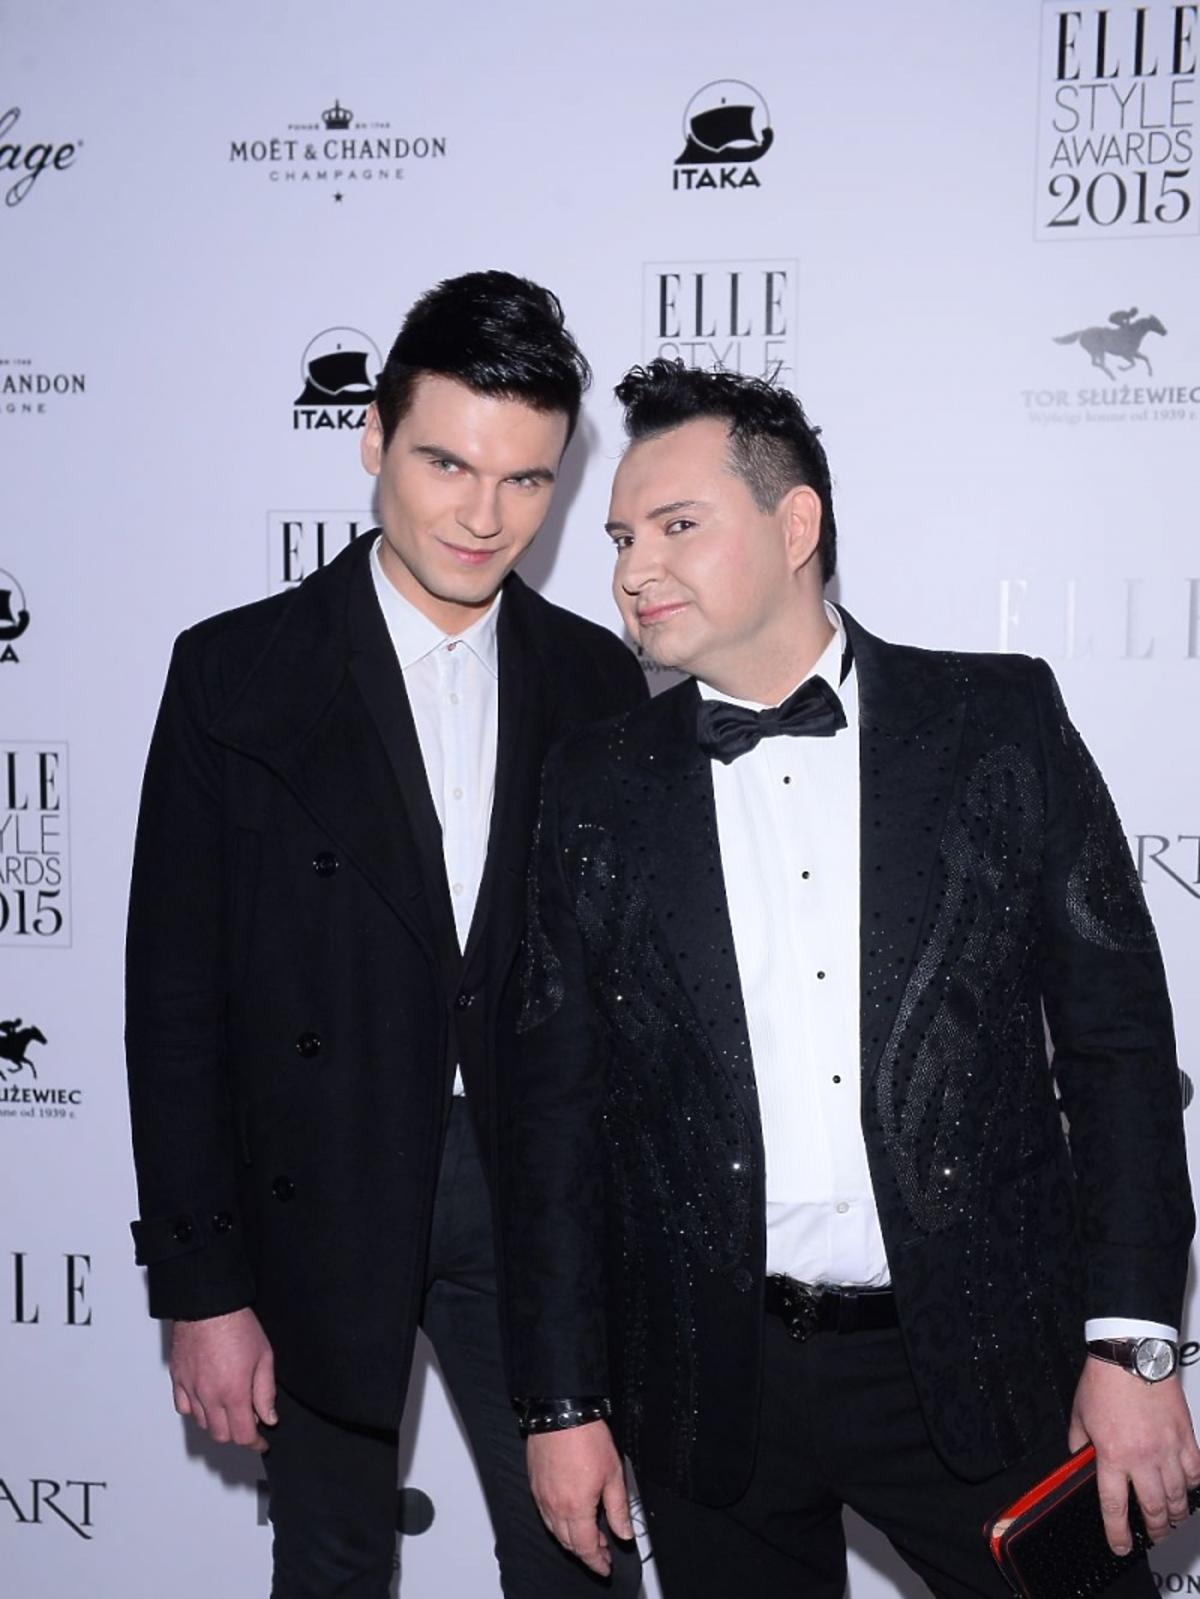 Michał Witkowski w czarnym garniturze z muszką z chłopakiem na imprezie magazynu Elle